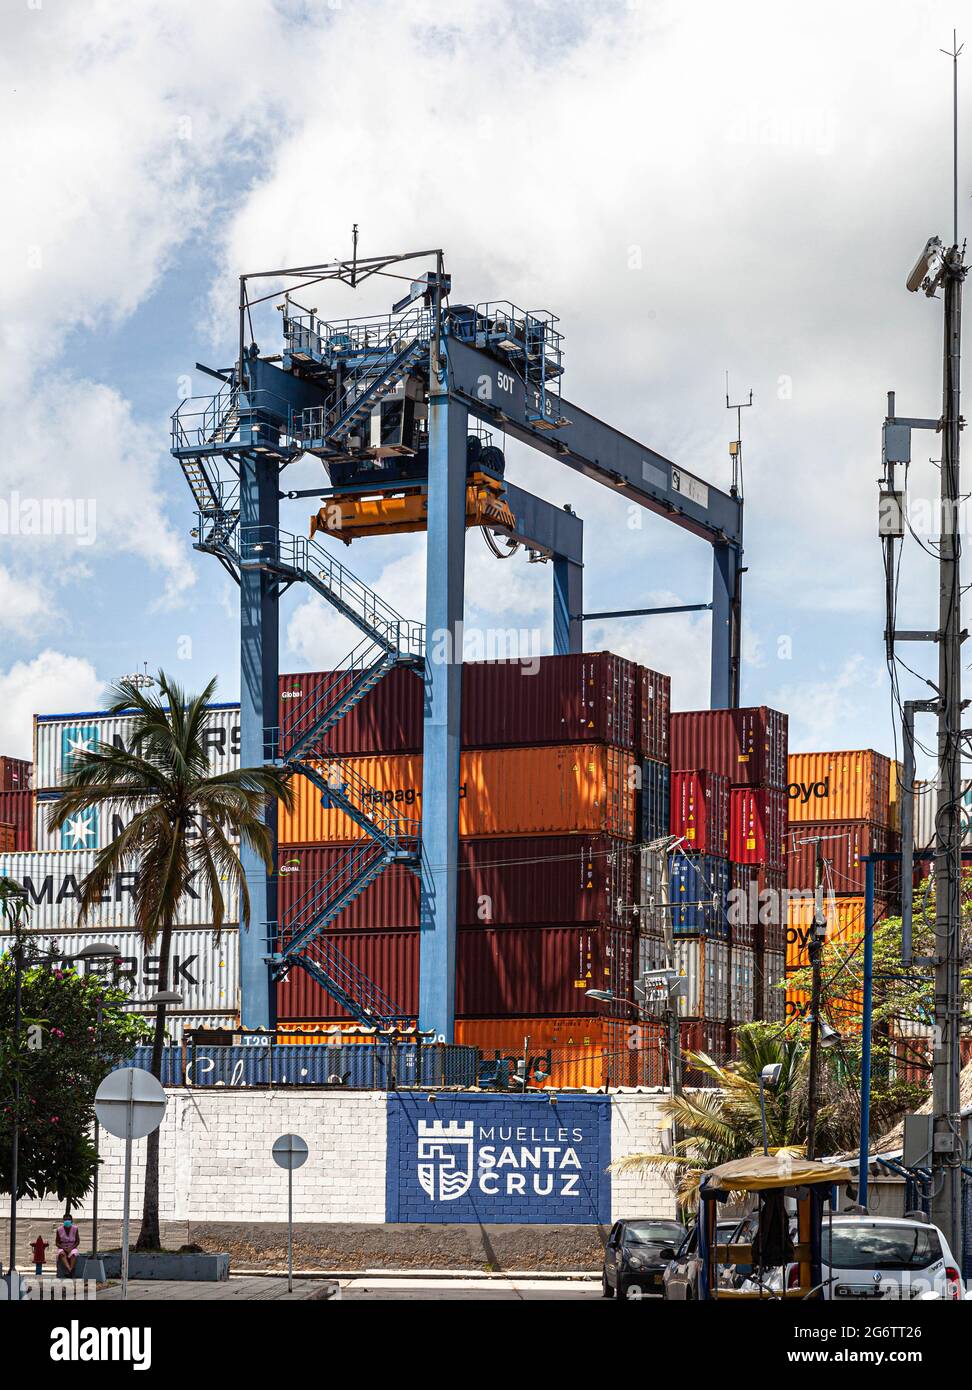 Comercio marítimo, Muelles Santa Cruz, Cartagena de Indias, Colombia. Foto de stock